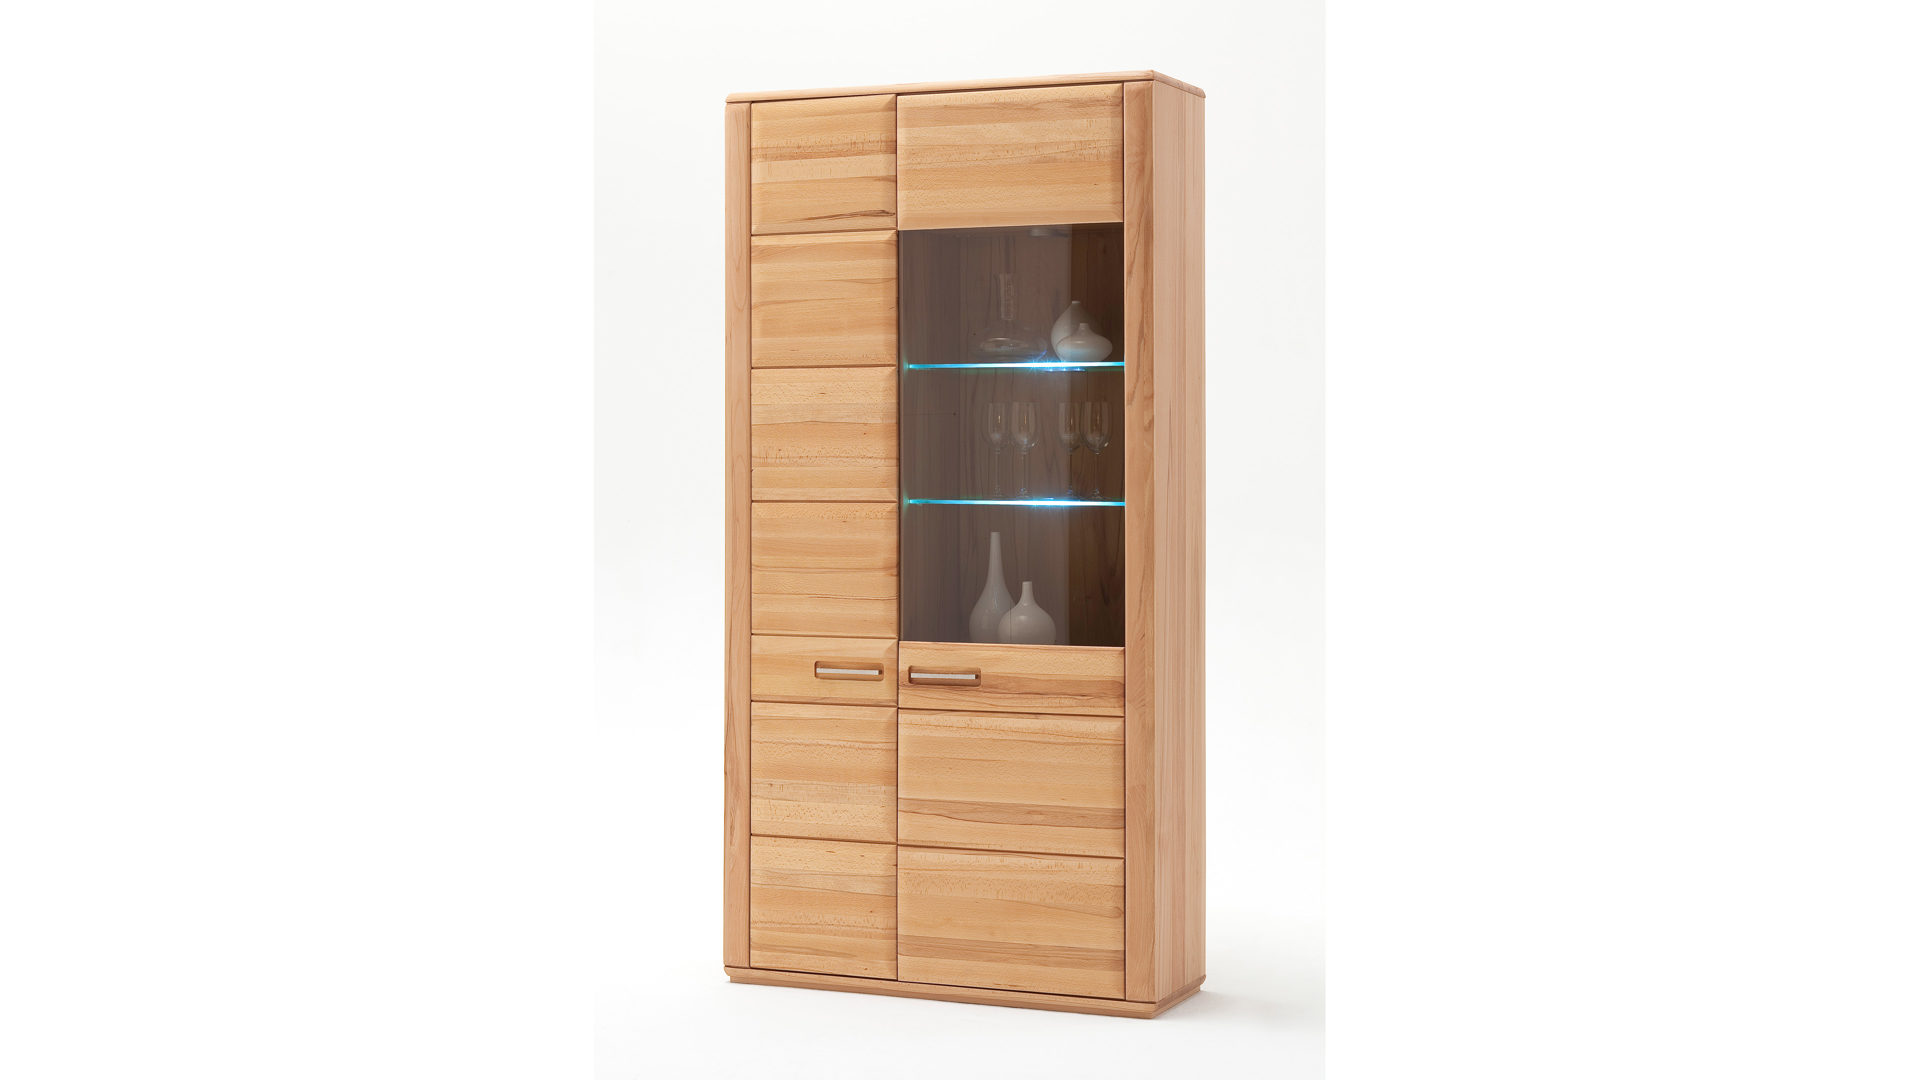 Vitrine Mca furniture aus Holz in Holzfarben Vitrinenschrank bzw. Wohnzimmerschrank geölte Kernbuche – zwei Türen